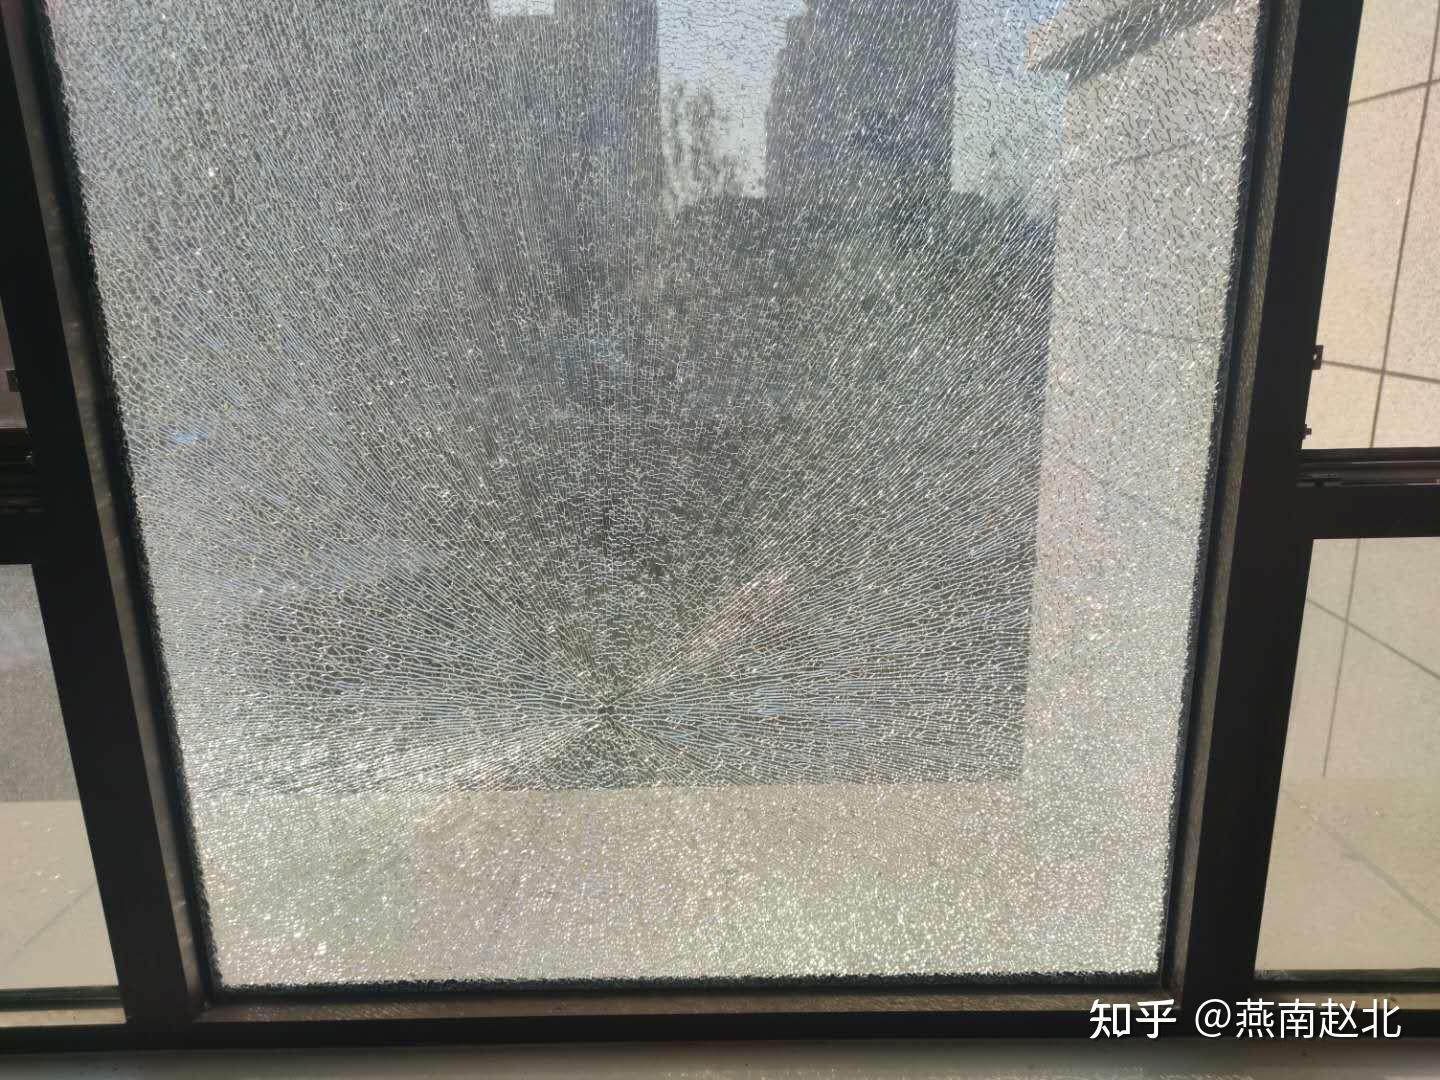 保定一居民新房窗户玻璃突然碎裂是自爆还是人为起争议